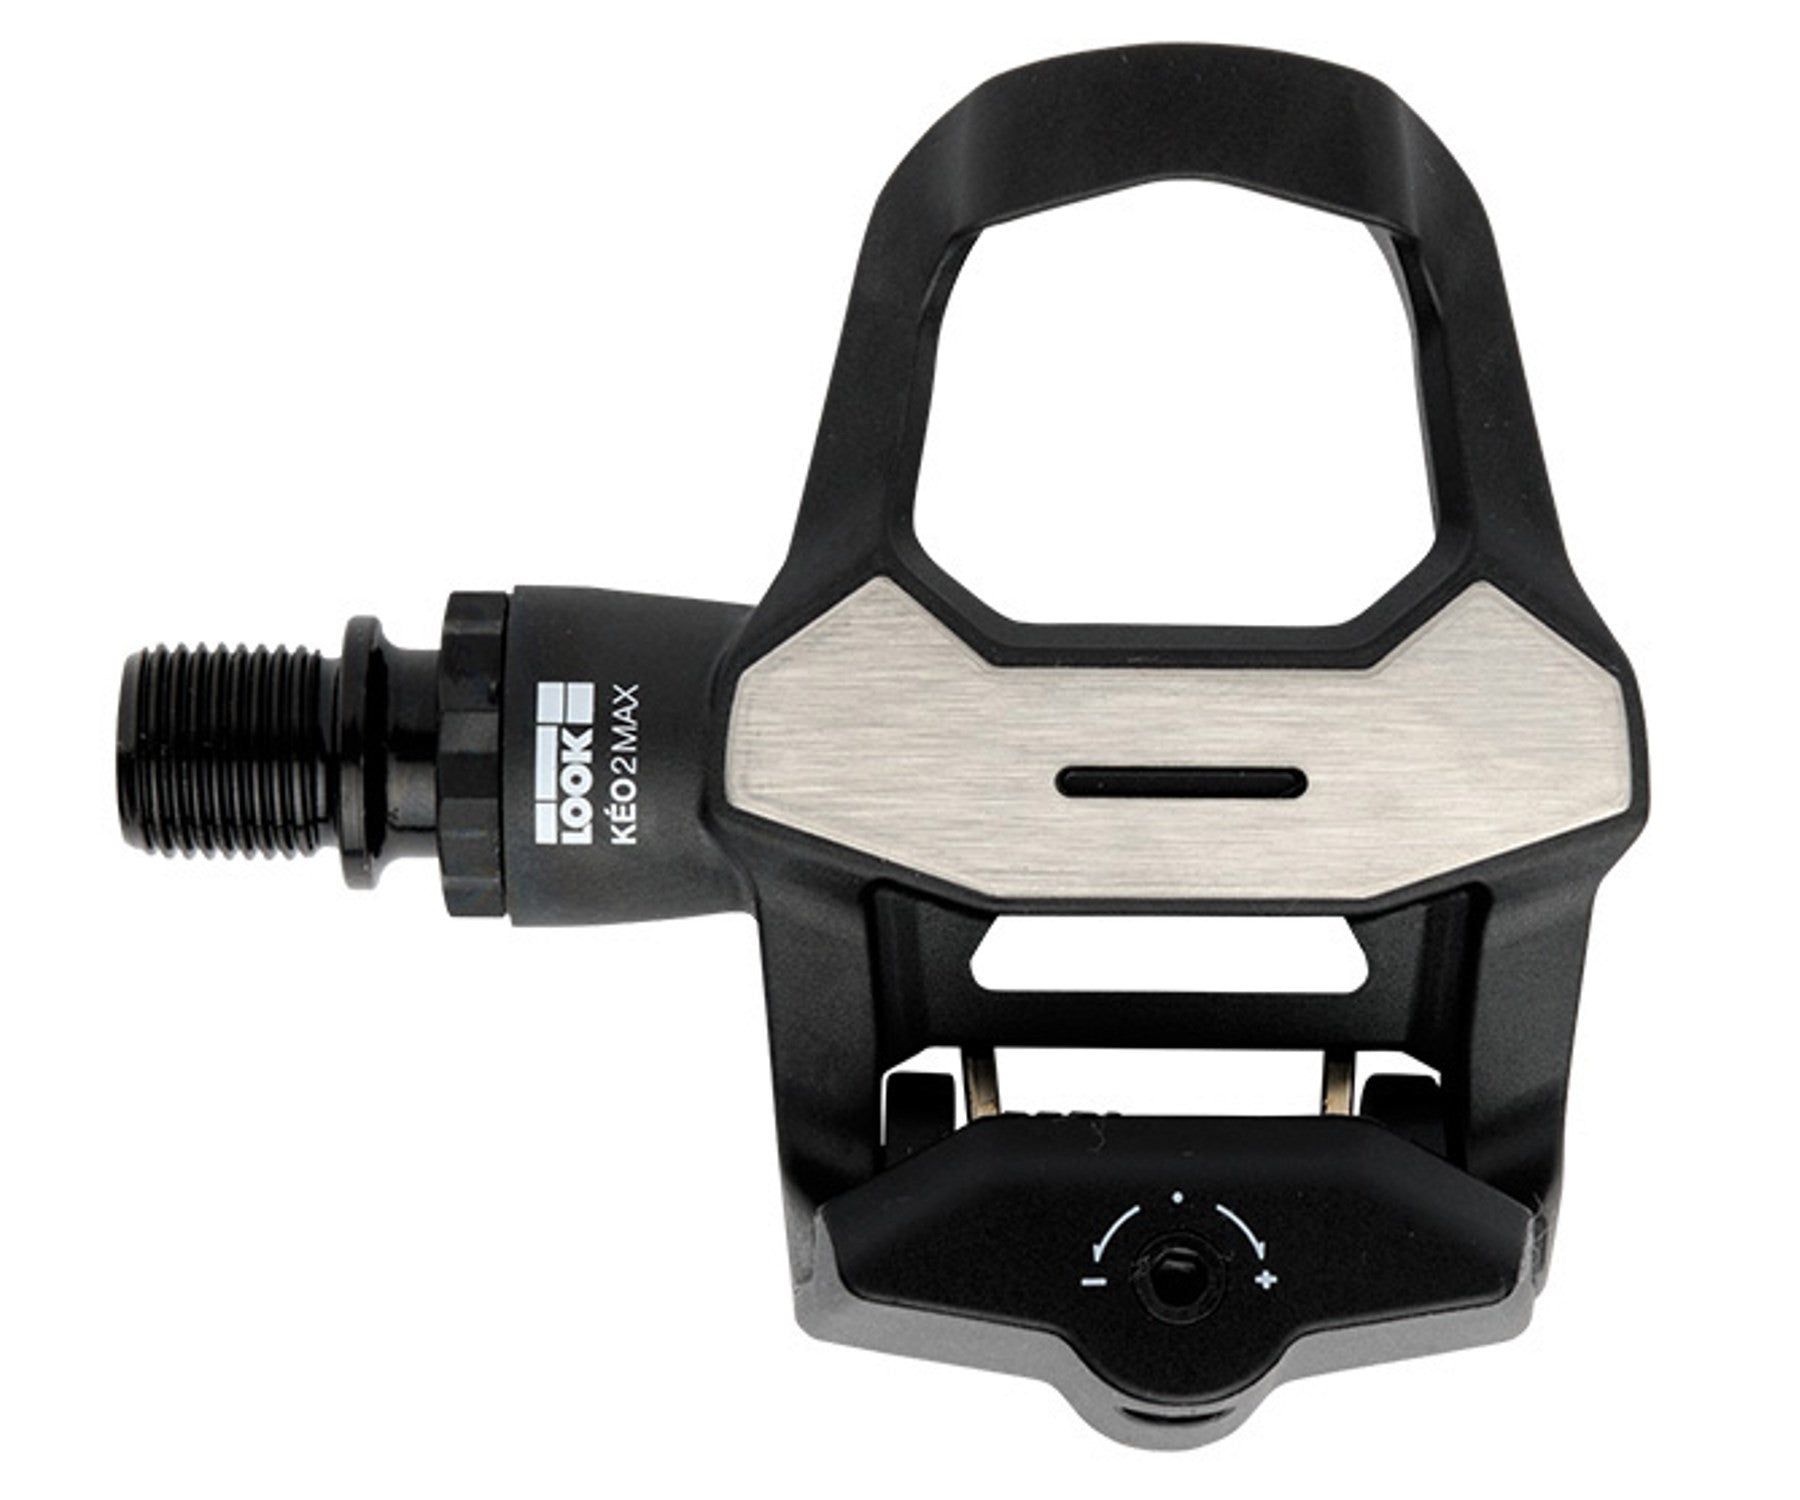 Look Keo 2 Max pedals - Retrogression Fixed Gear